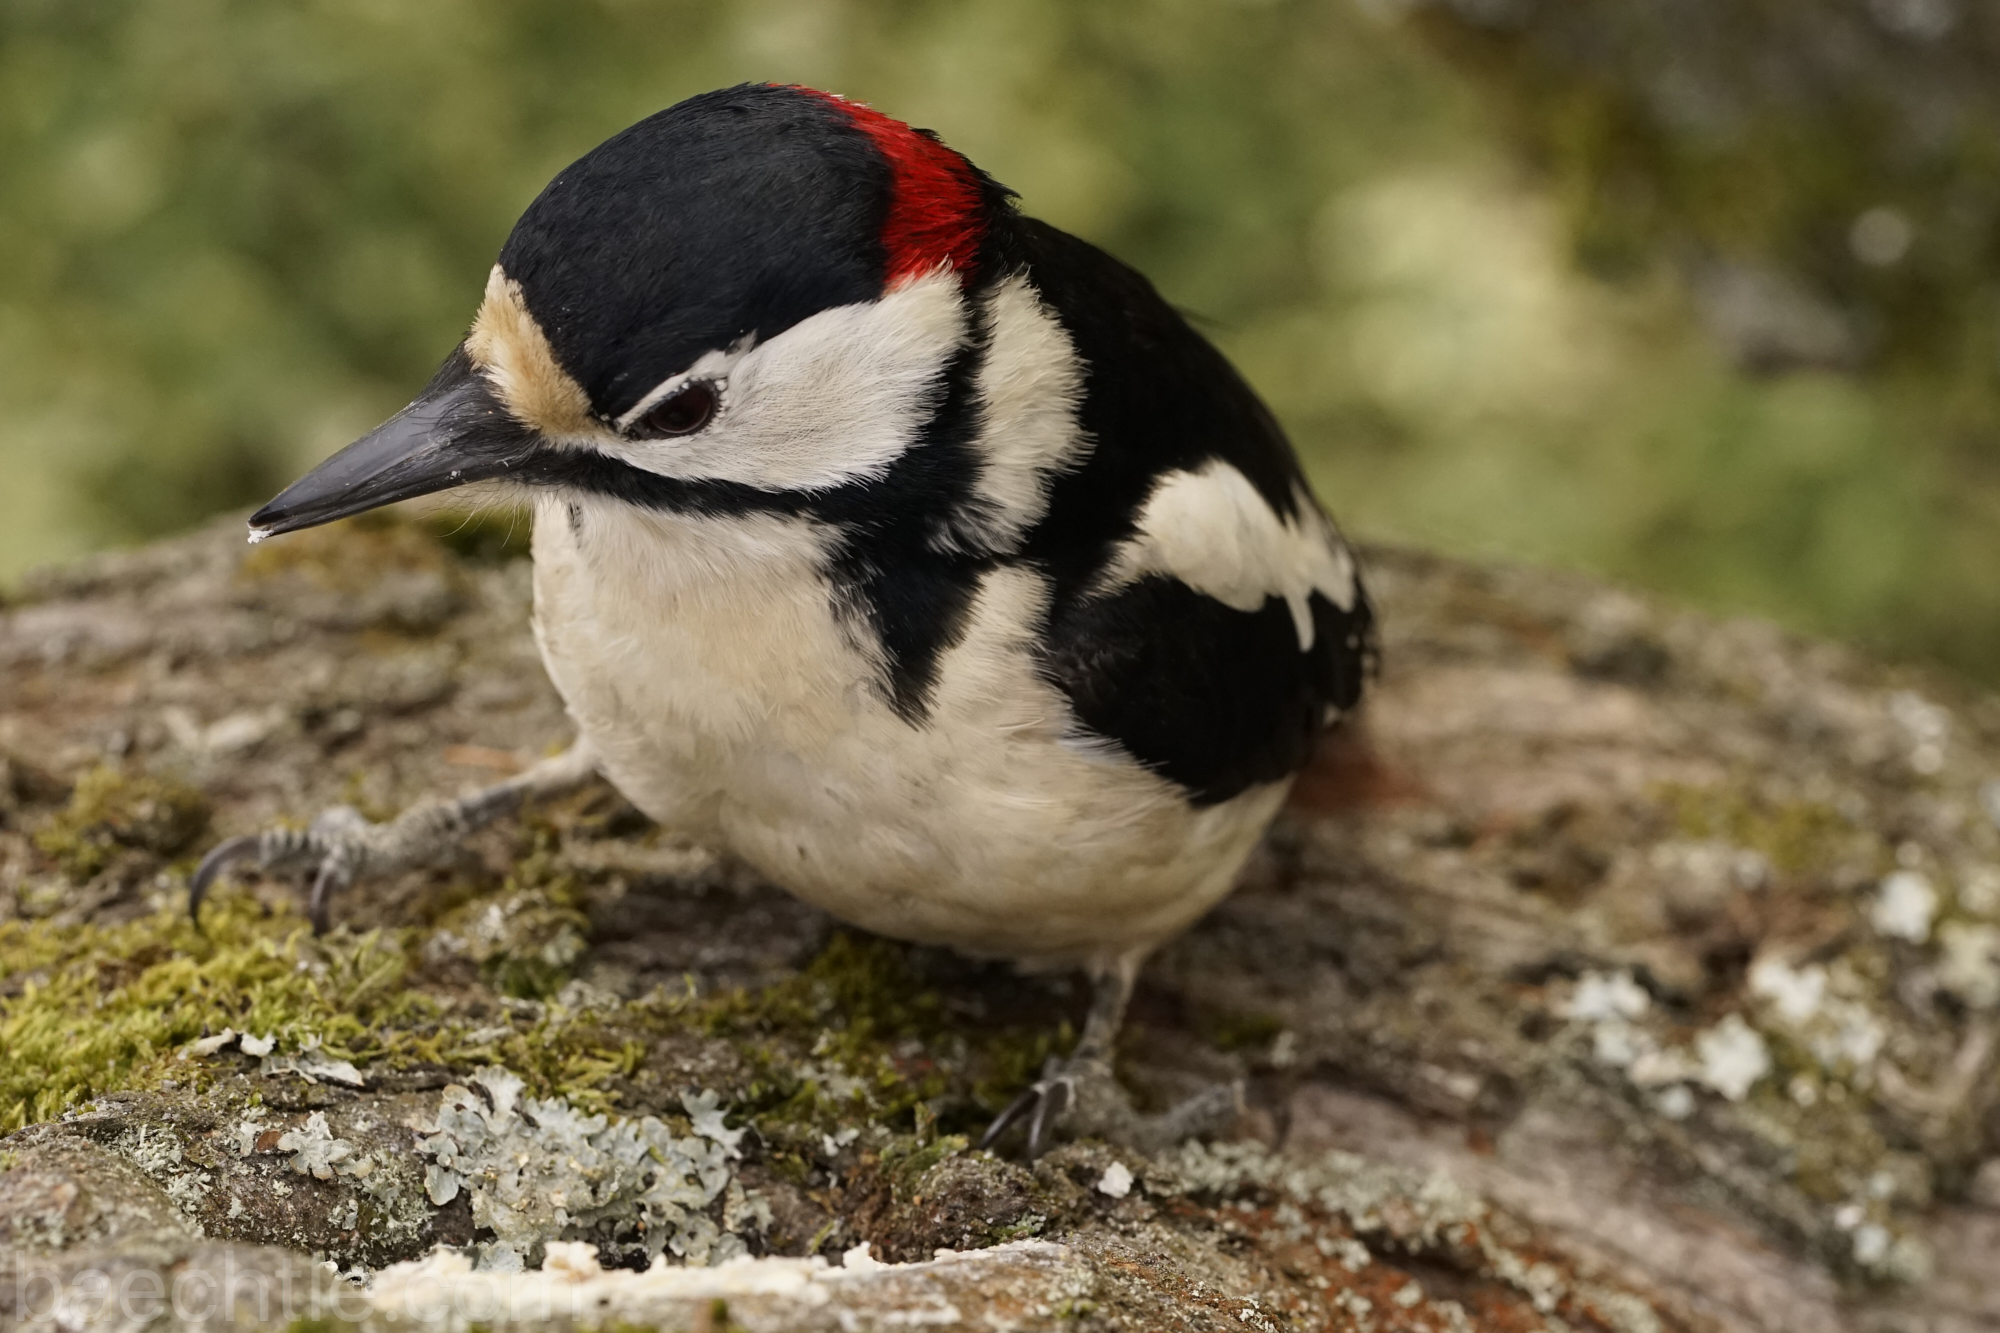 Tierfotografie – Vögel fotografieren mit dem Sony FE 90 2,8 Macro G OSS